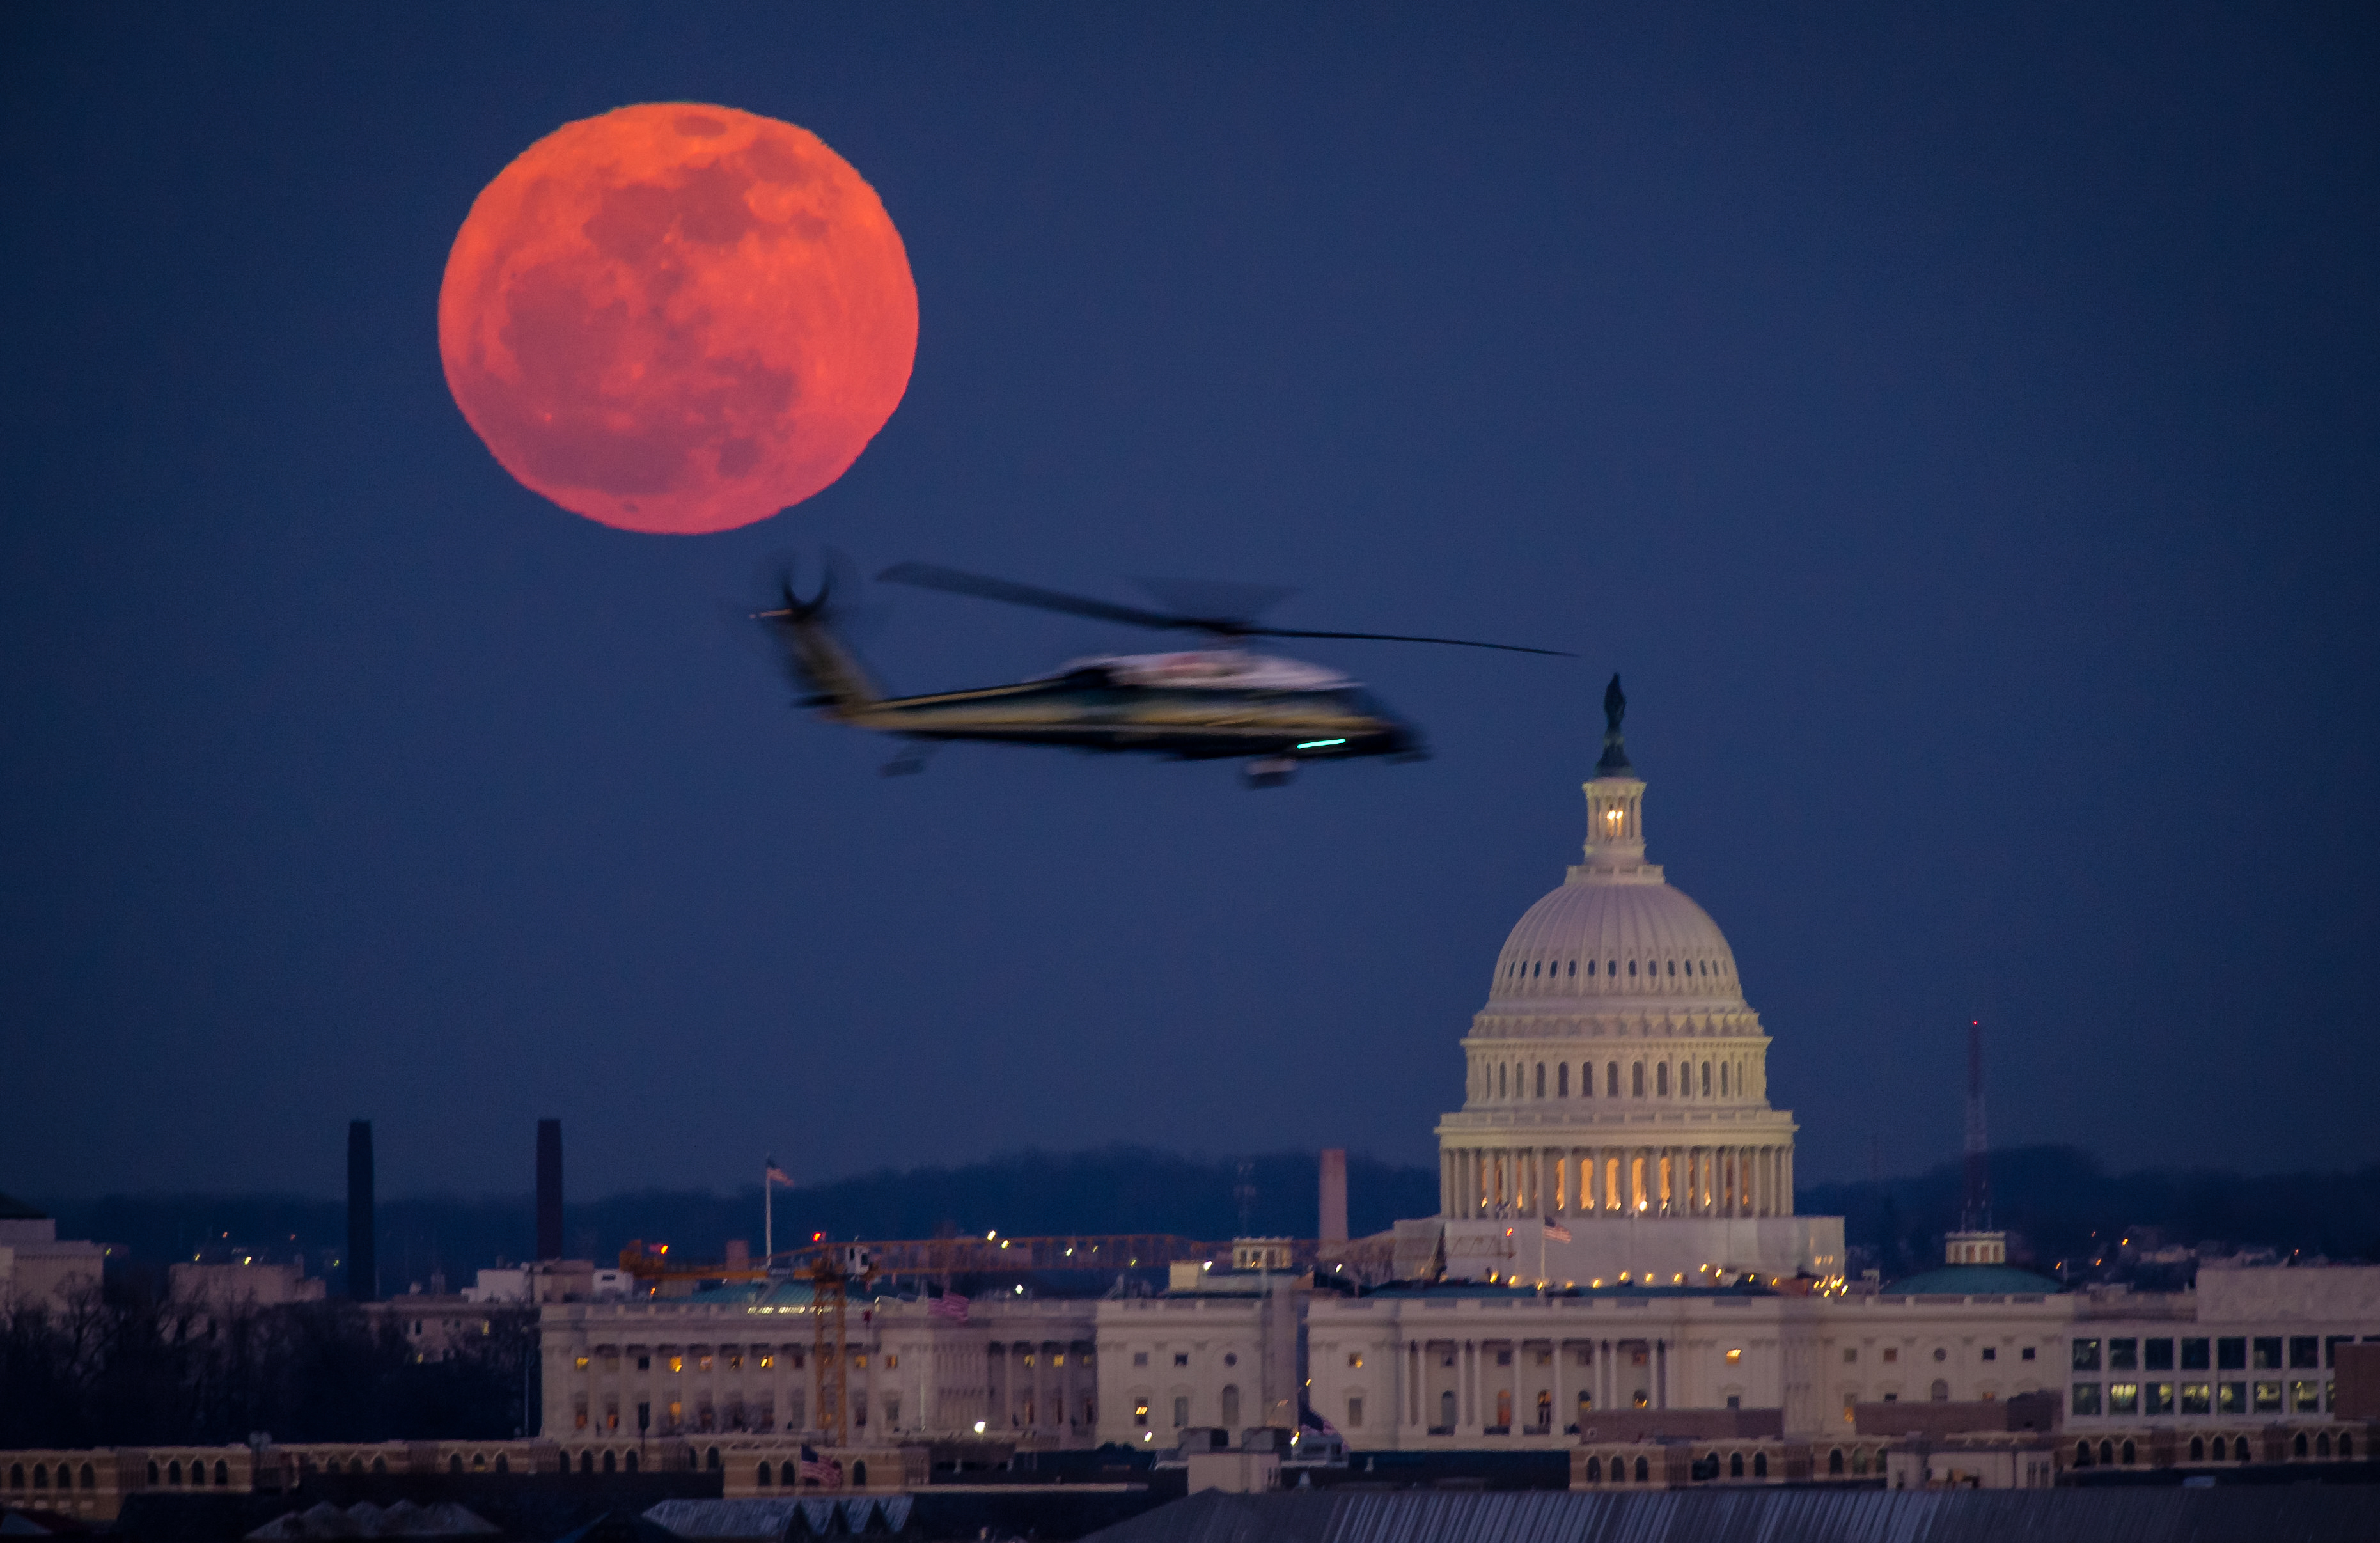 Se ve un helicóptero del Cuerpo de Marines de EE. UU. volando a través de esta vista de la luna llena y el edificio del Capitolio de EE. UU. el martes 7 de febrero de 2012 desde el Cementerio Nacional de Arlington